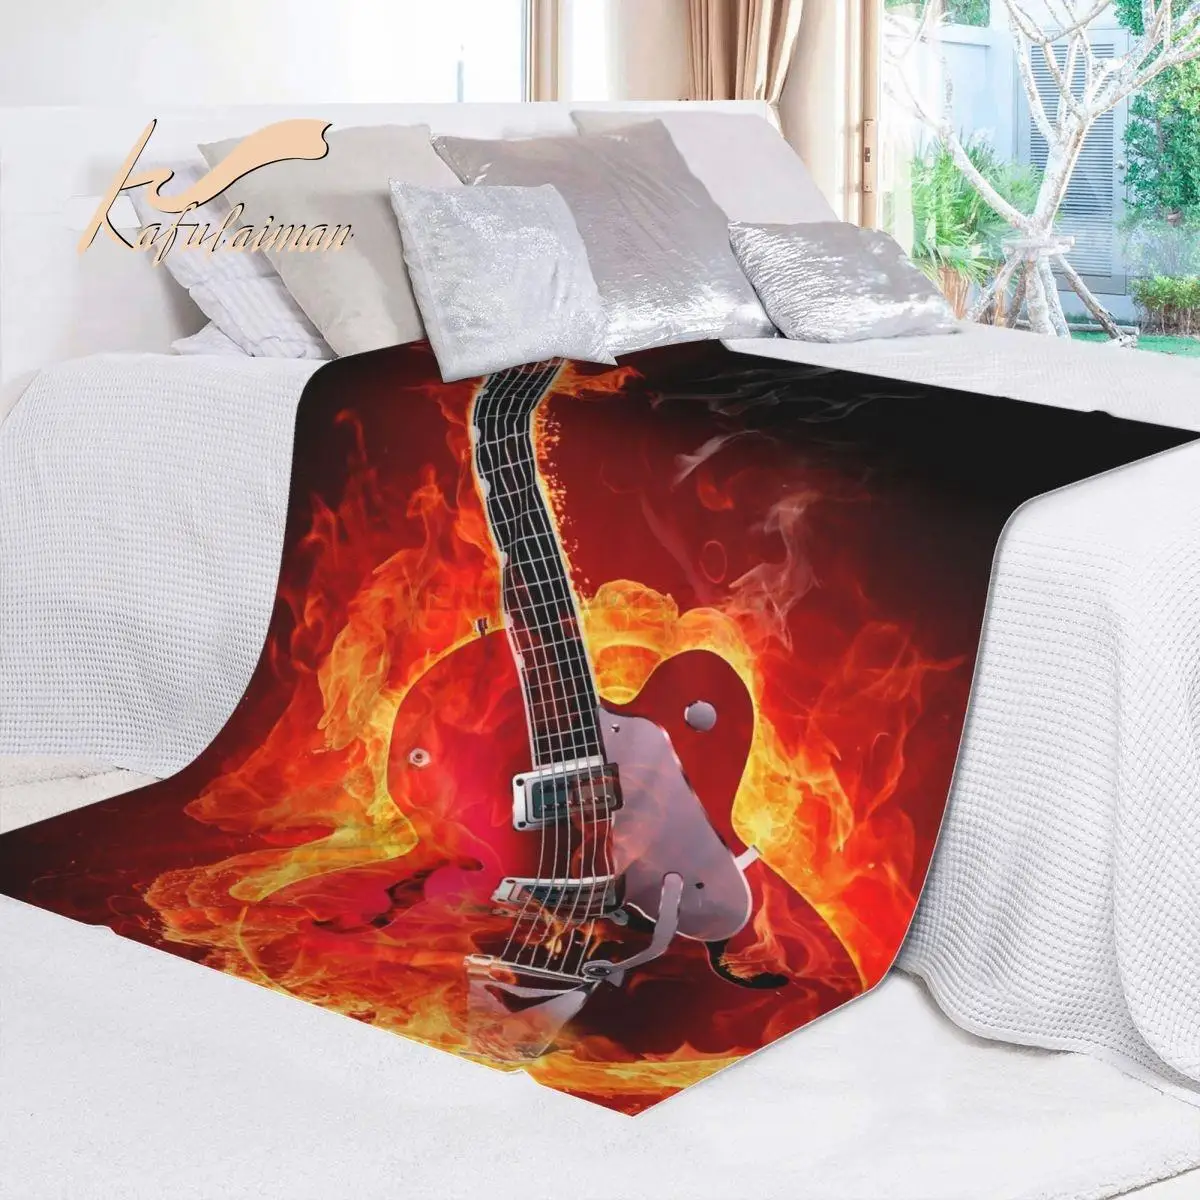 

Bass Gitarre Decke Bett Super Weiche Decke Ästhetischen Fleece Bettdecke Bettwäsche Flanell für Kinder und Erwachsene Schlafzimm